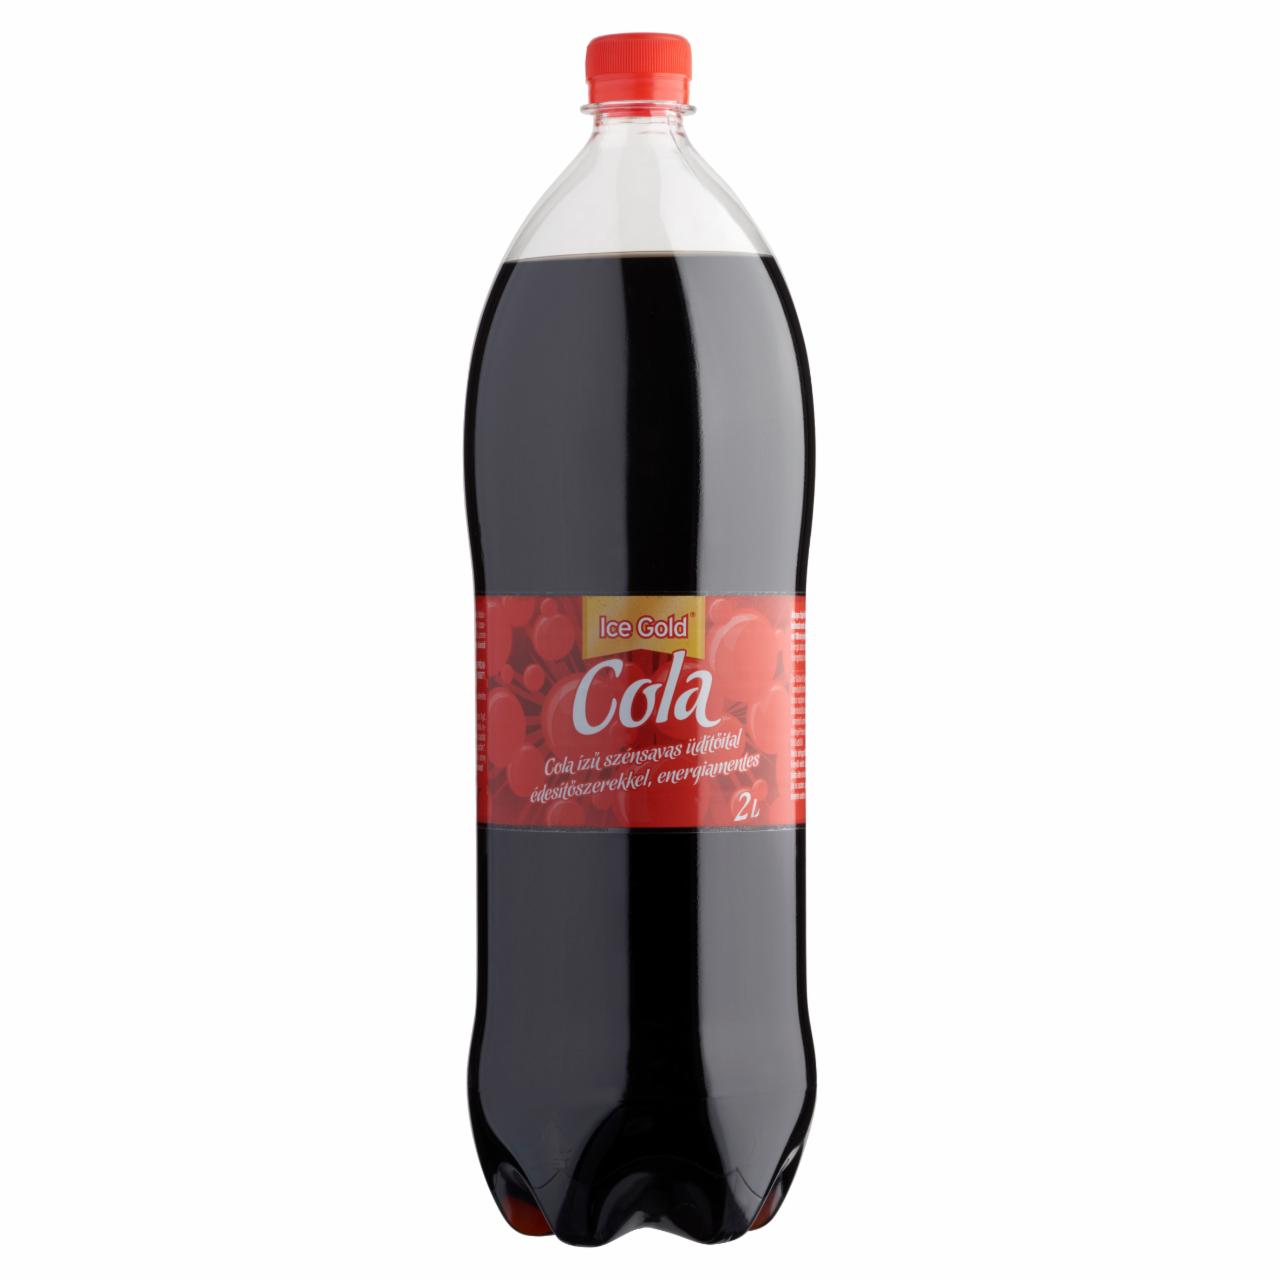 Képek - Ice Gold energiamentes cola ízű szénsavas üdítőital édesítőszerekkel 2 l